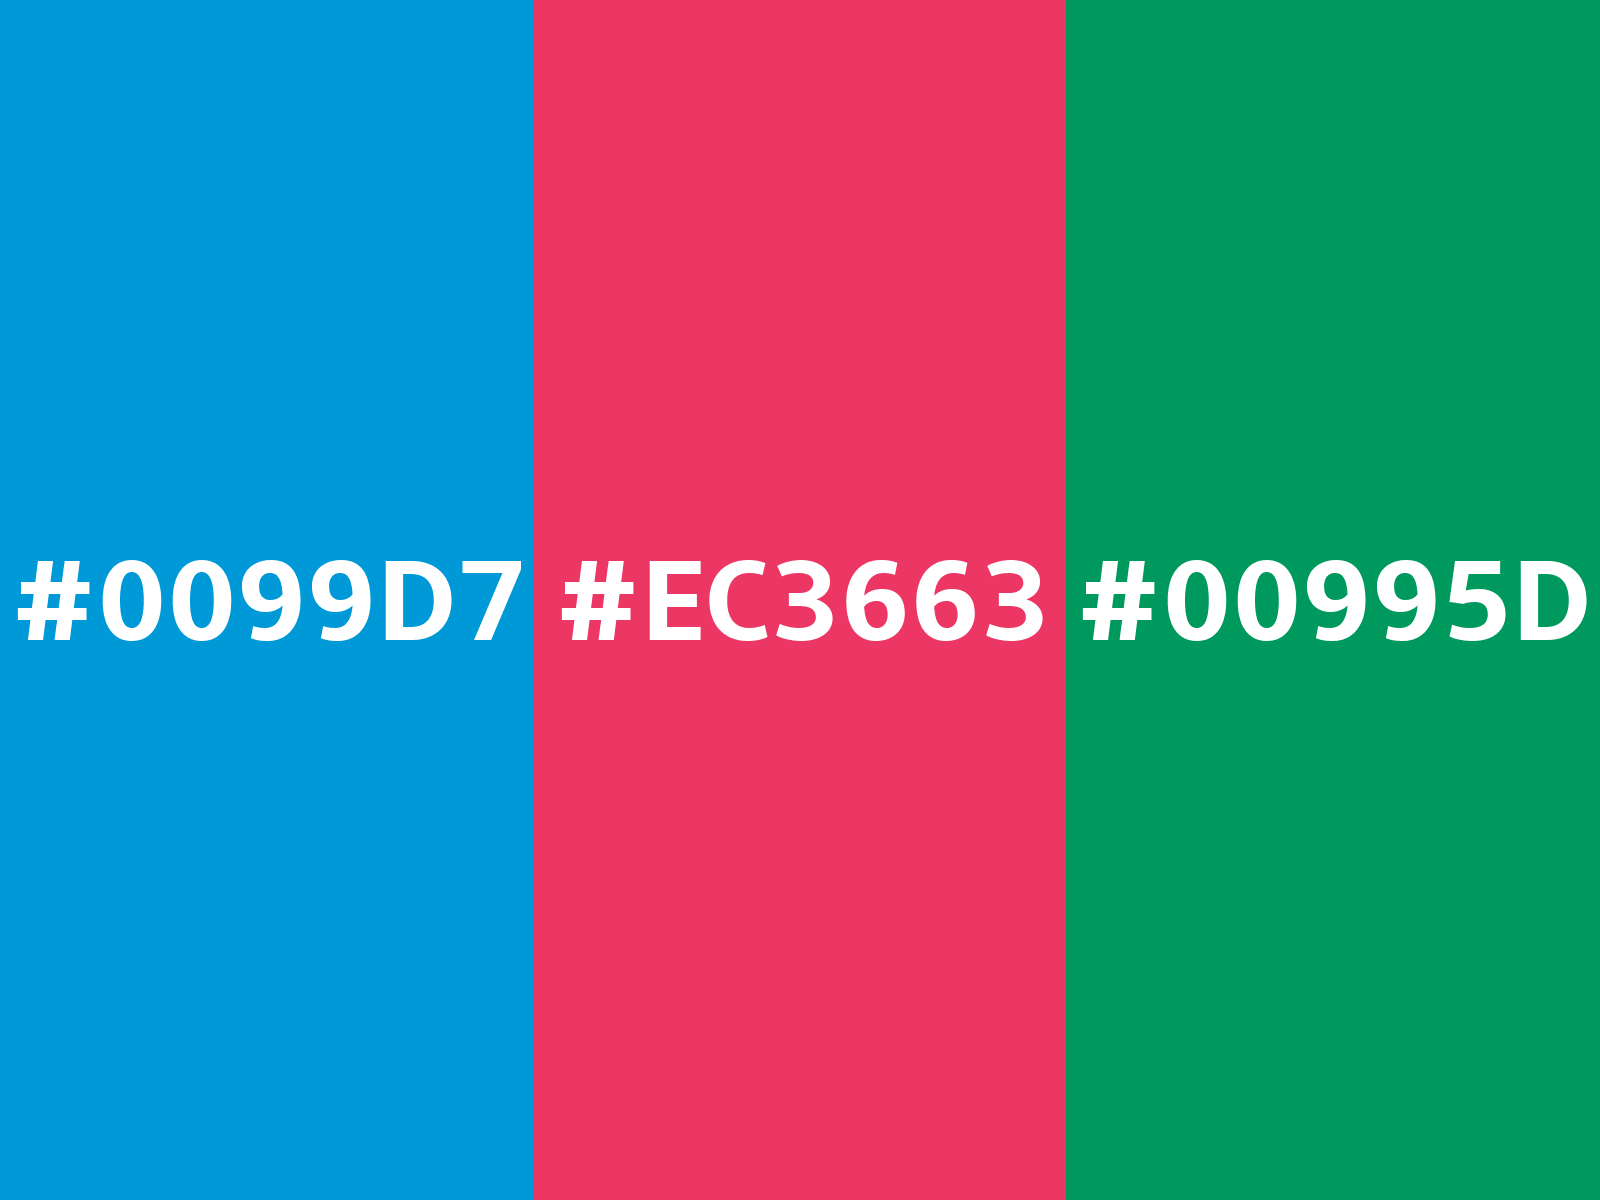 ec3663